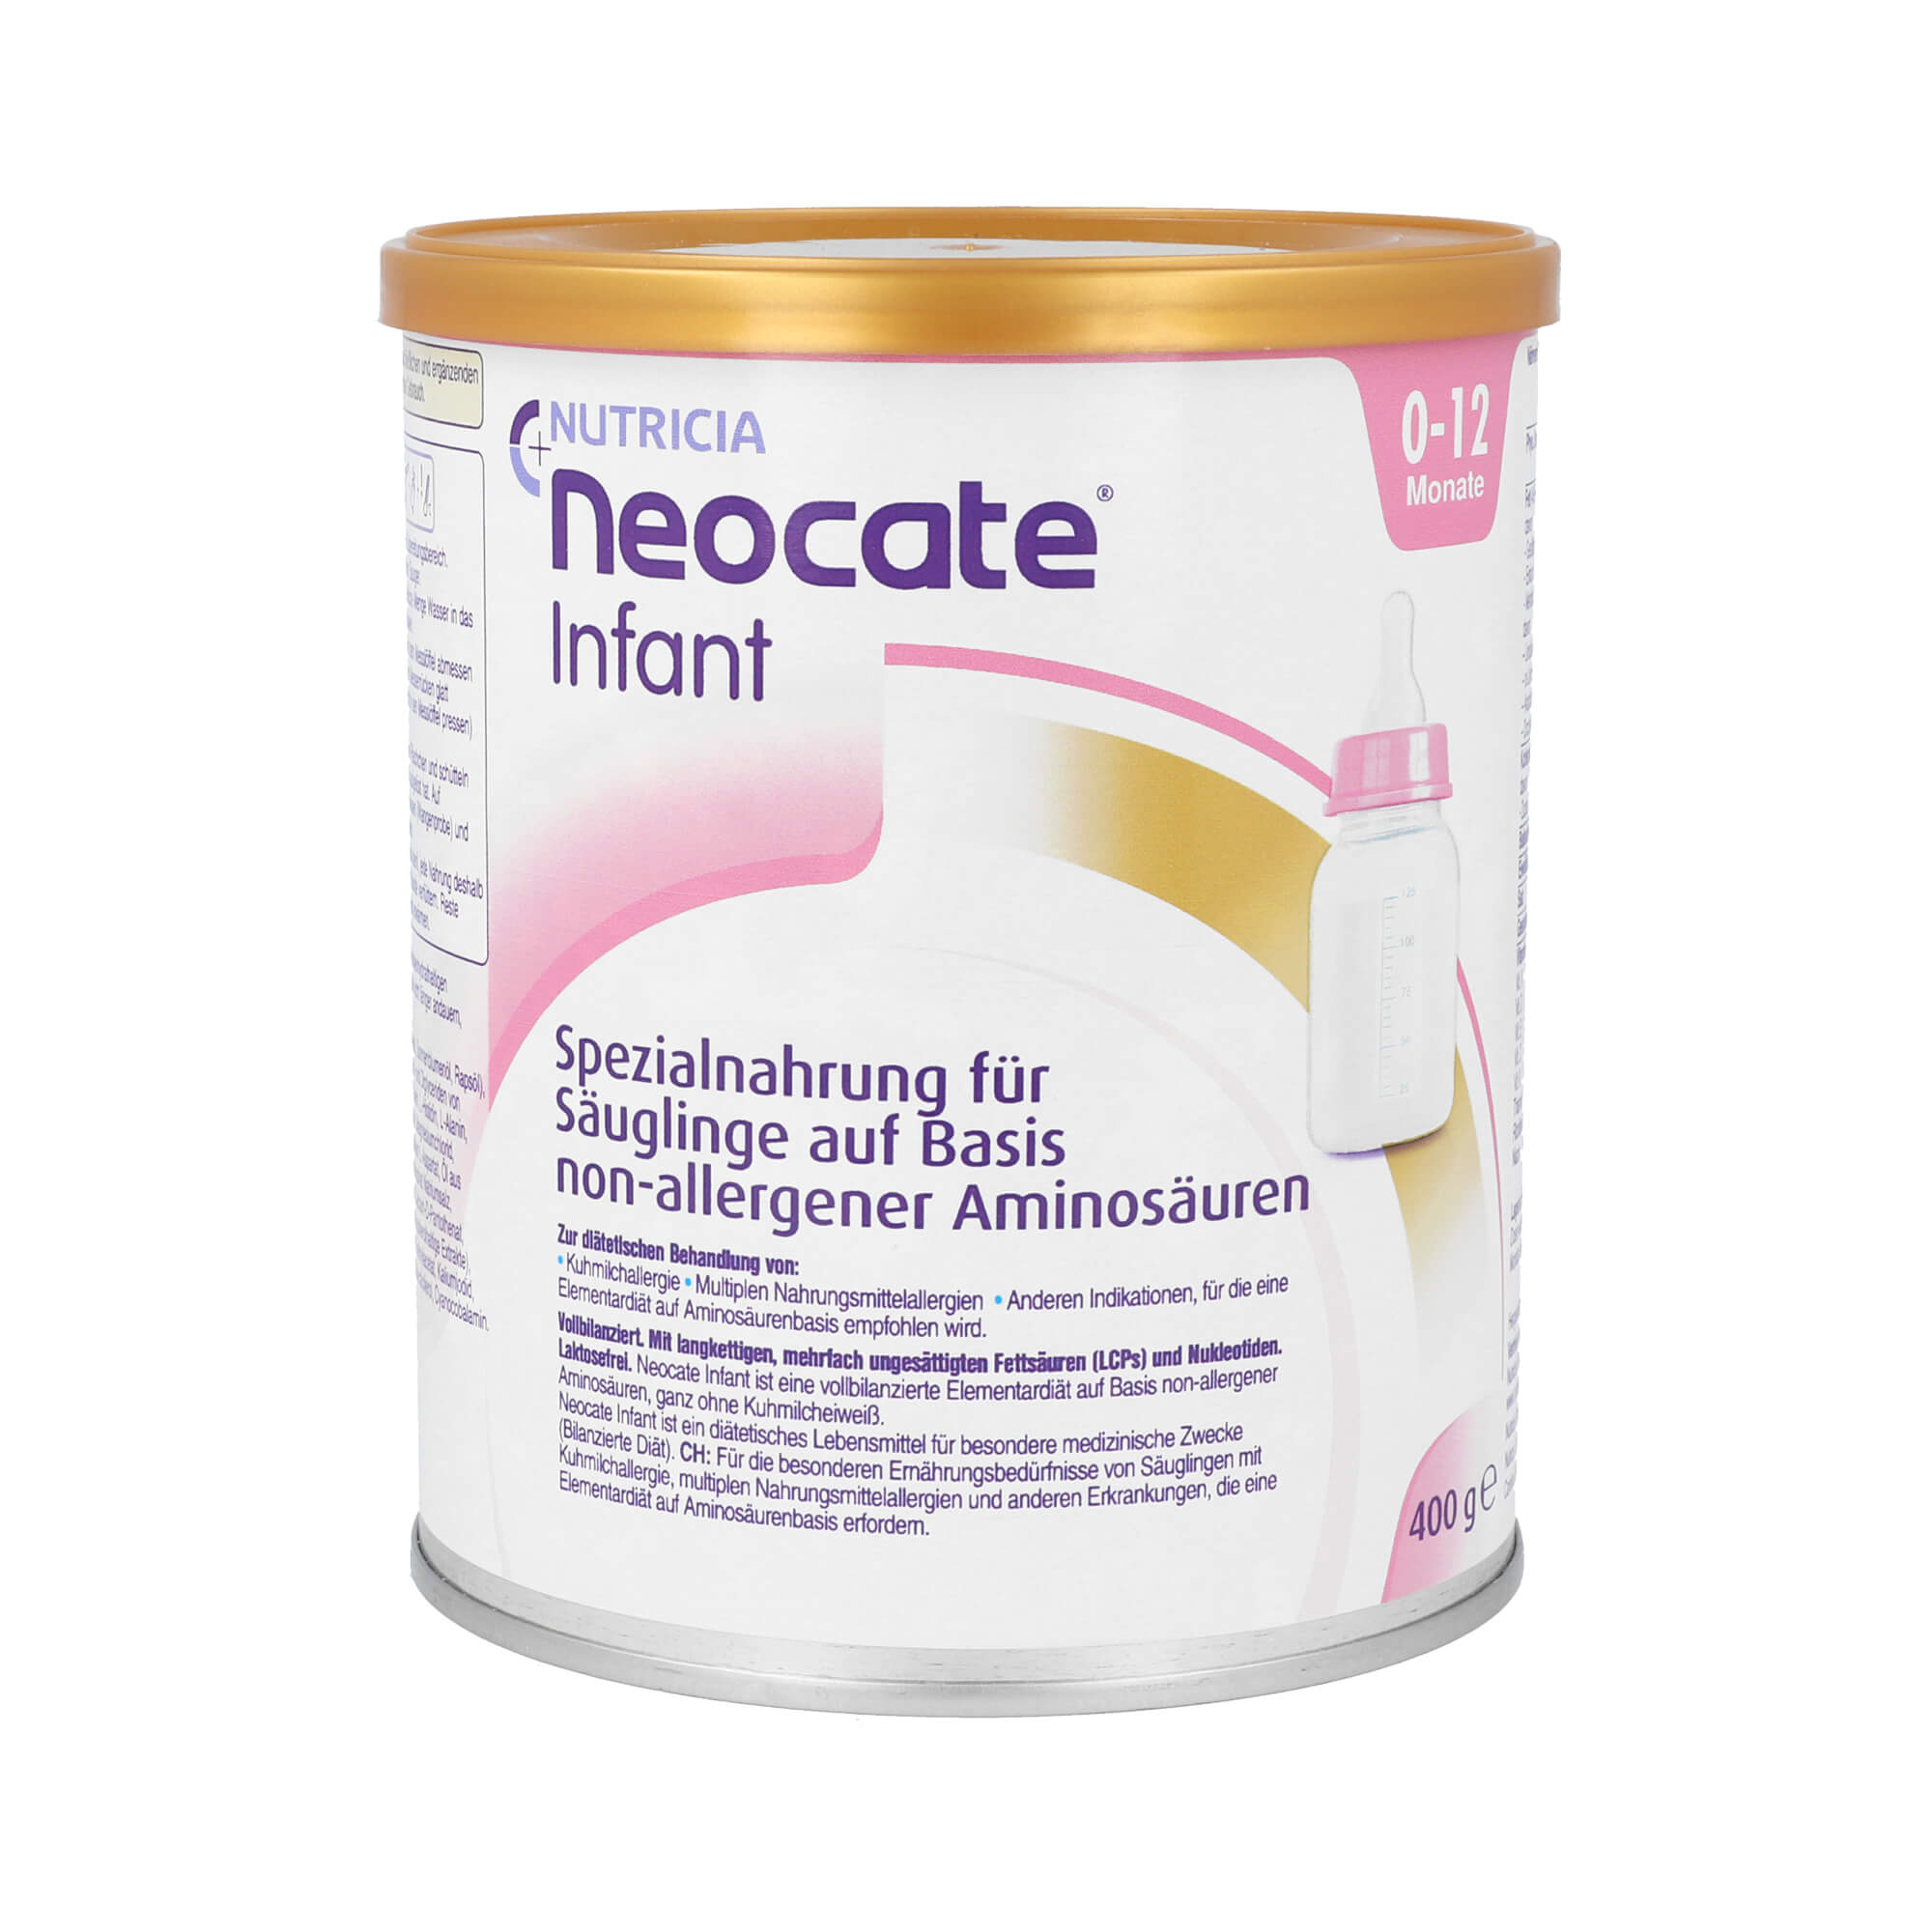 Spezialnahrung für Säuglinge auf Basis non-allergener Aminosäuren. Alter: 0-12 Monate.